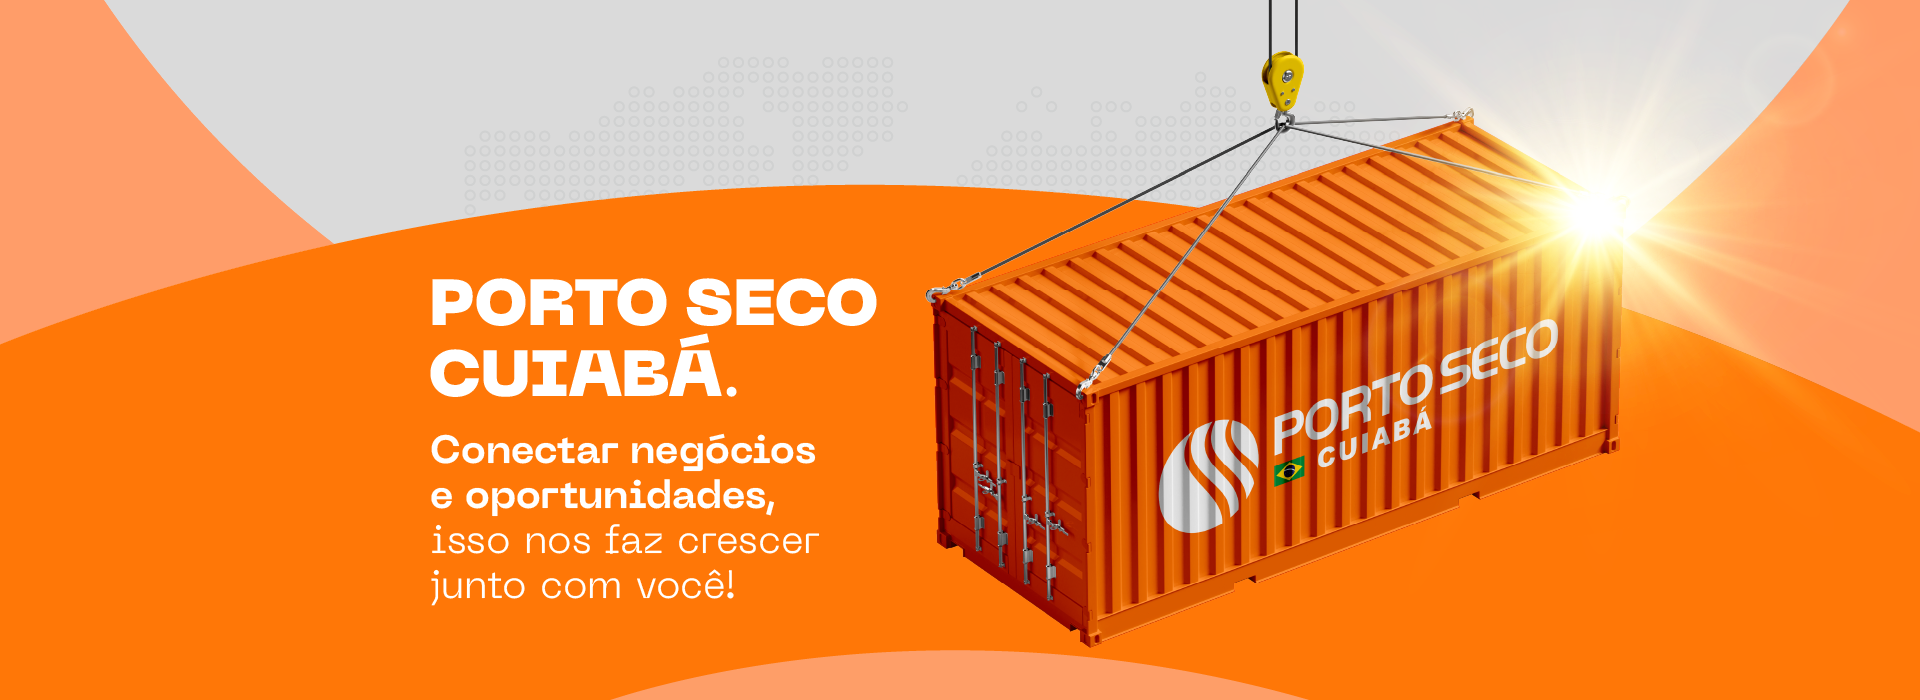 Negócio Certo Cuiabá - A sua rede de negócios